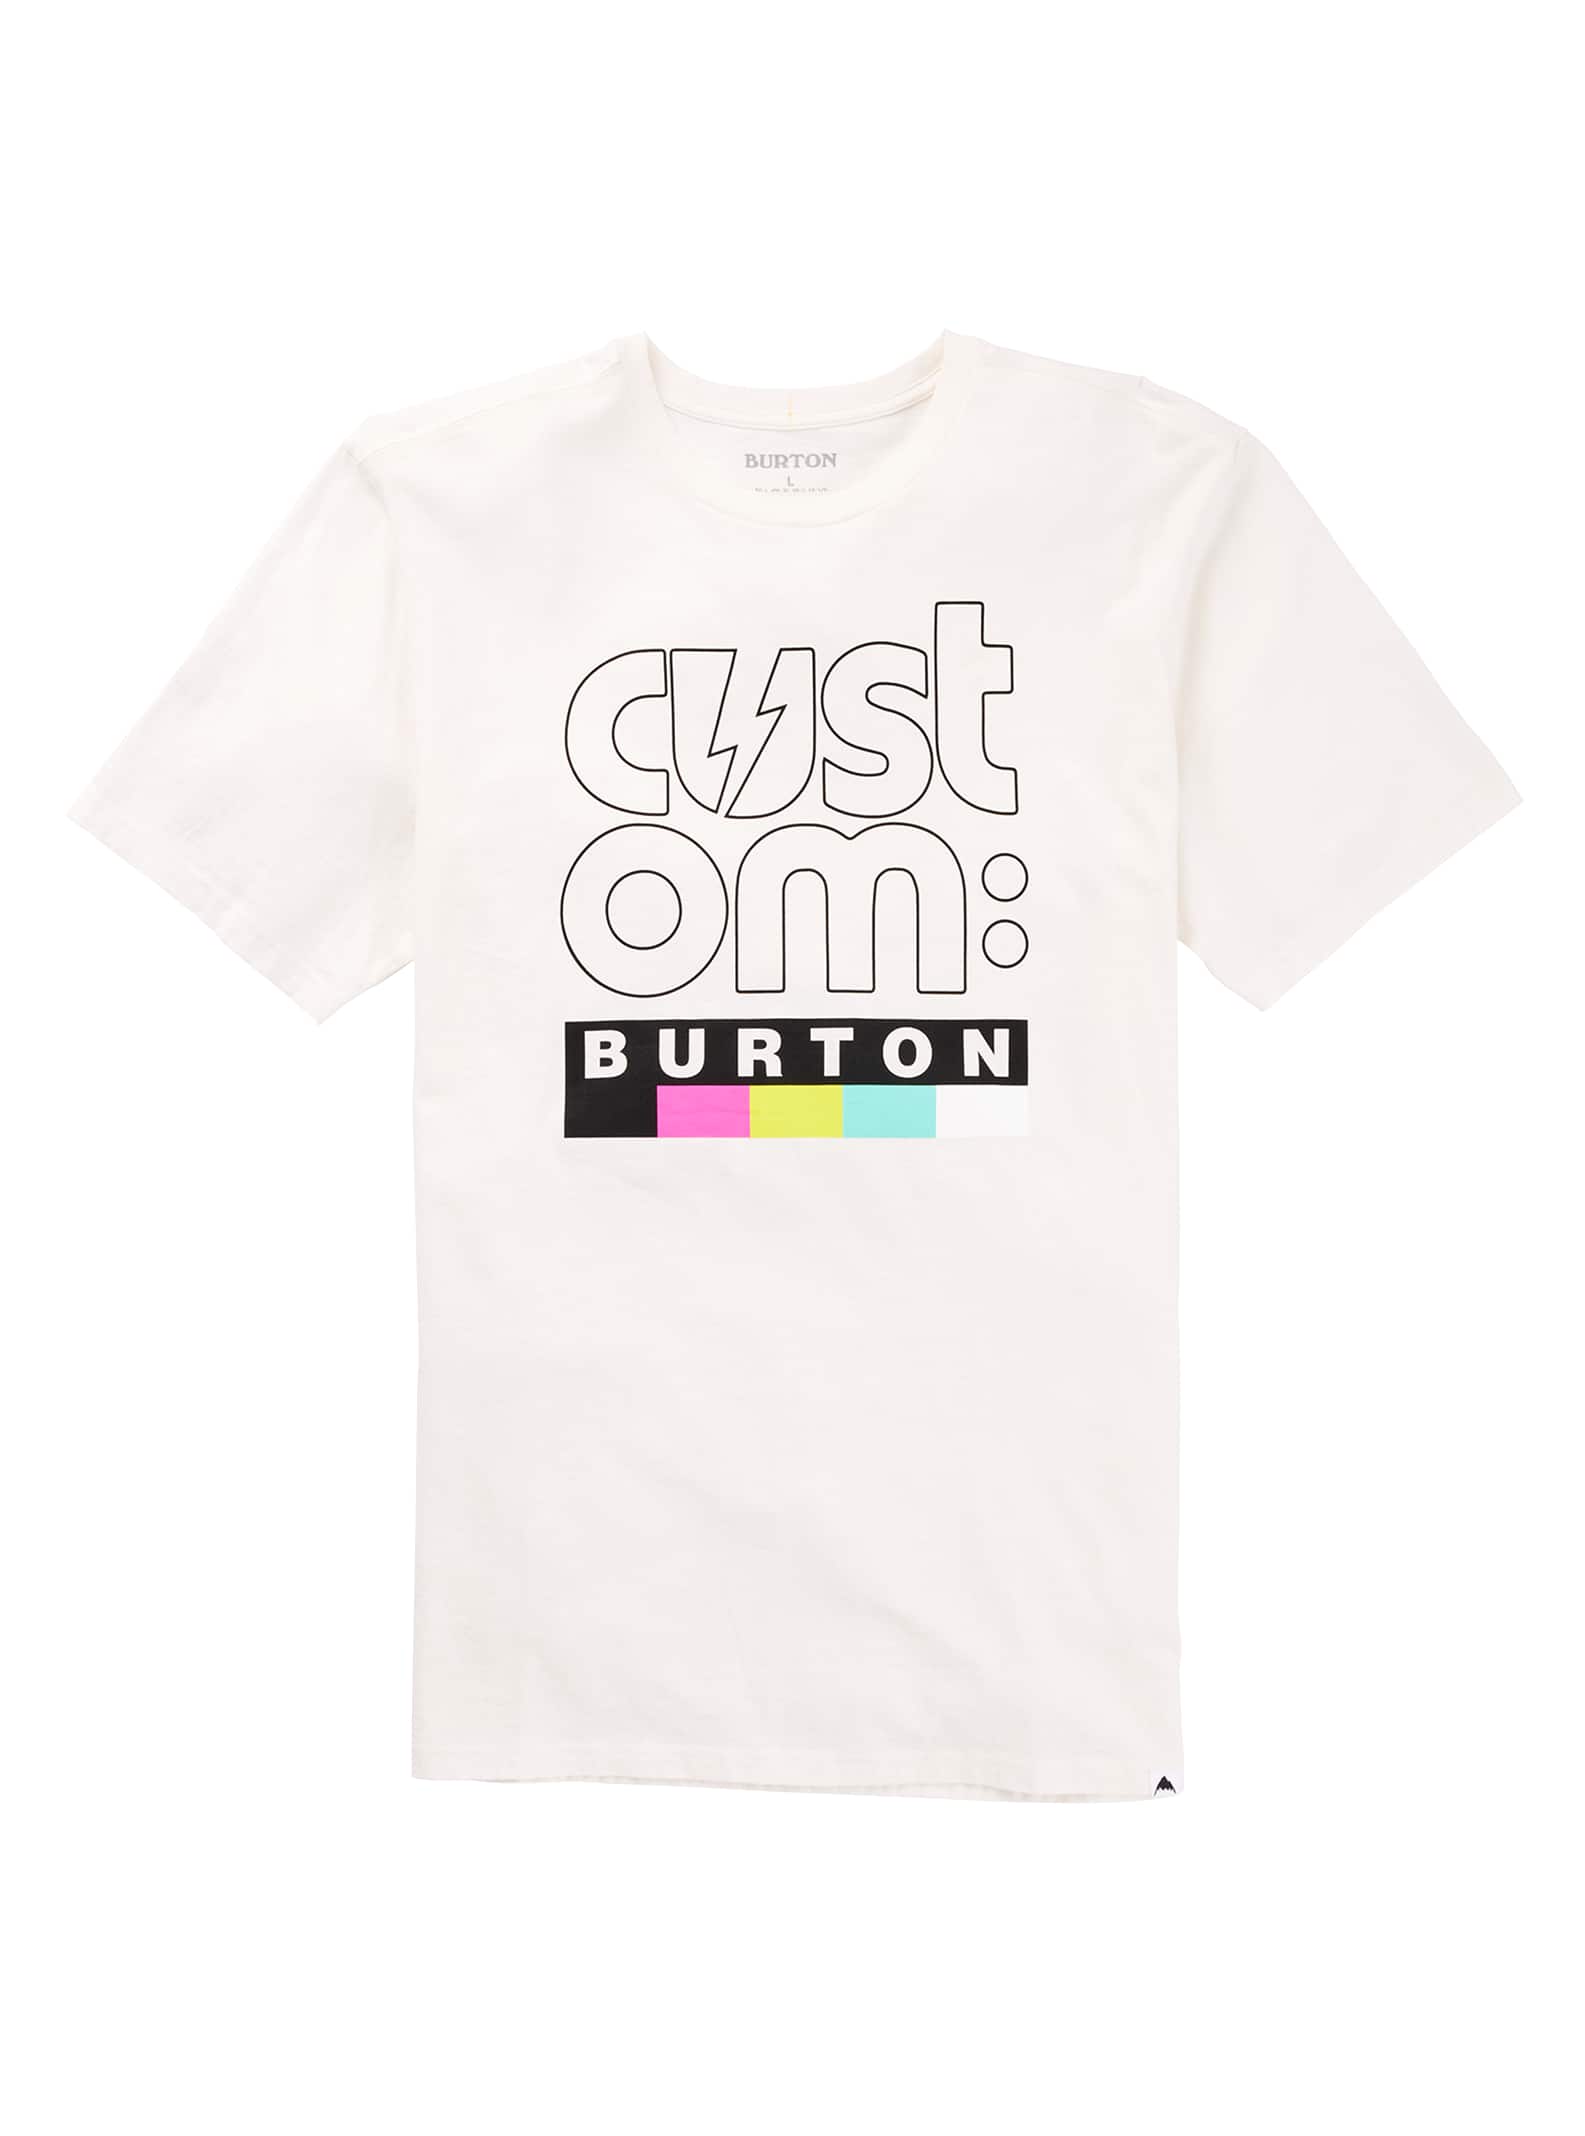 Burton Custom Short Sleeve T Shirt | Burton.com Winter 2021 US